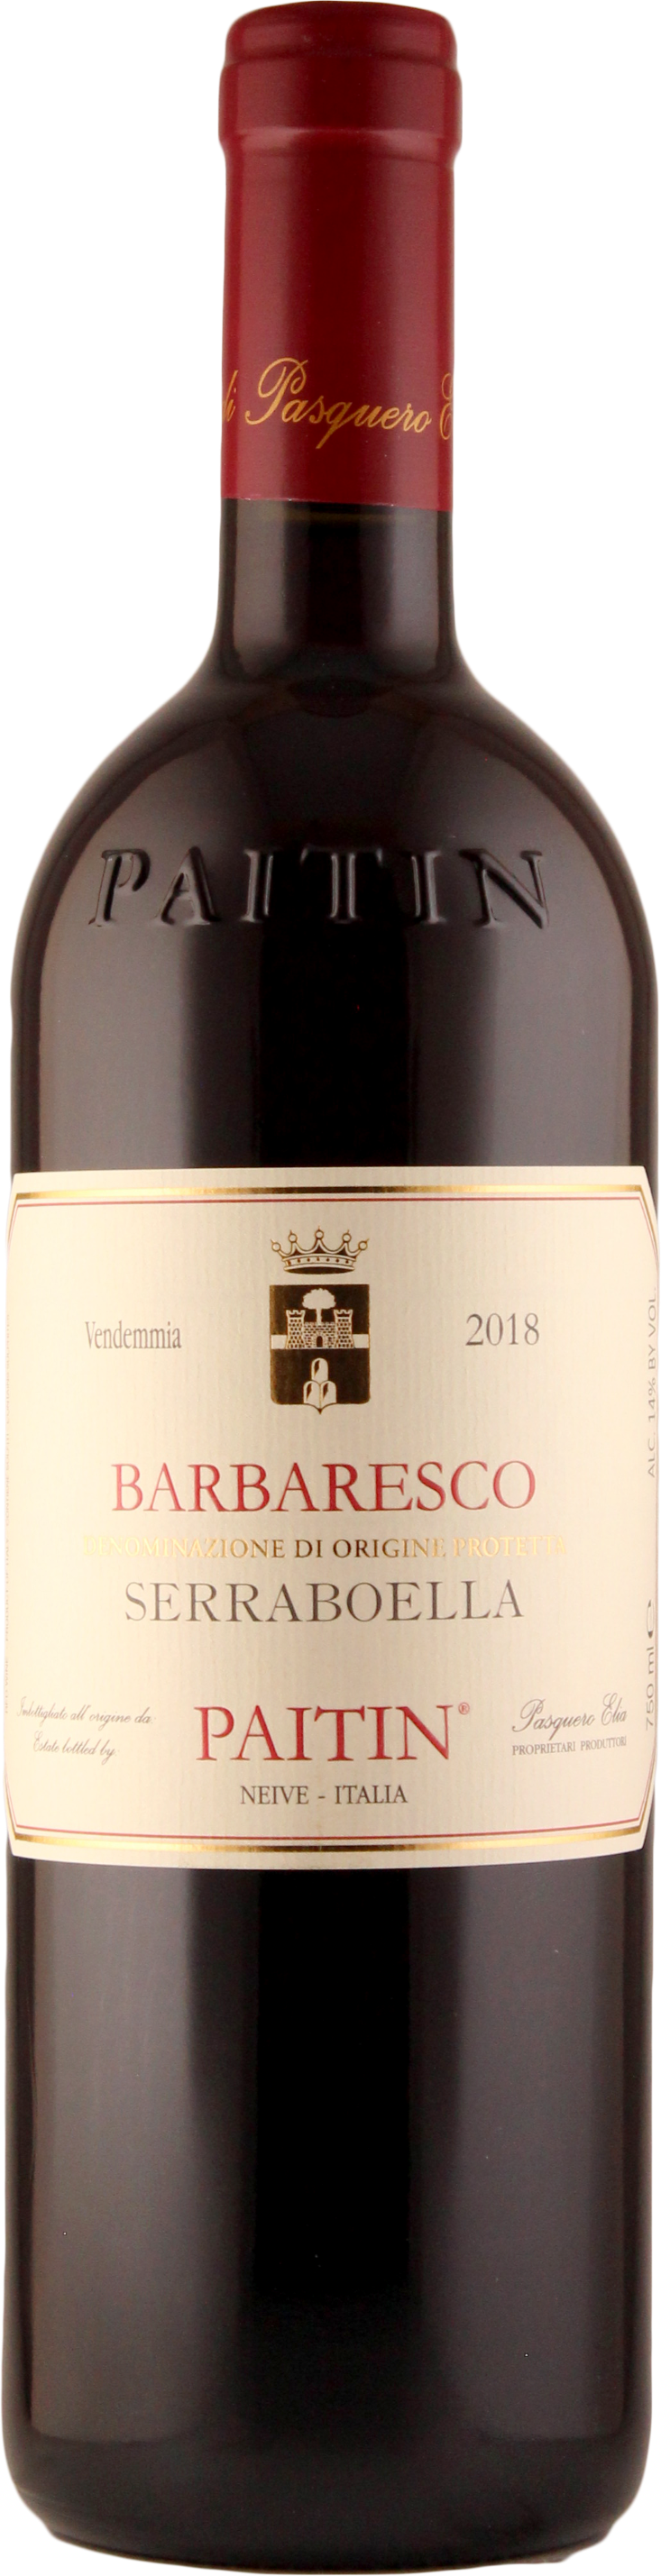 Barbaresco 'Serraboella' 2018 - Paitin/Piemont